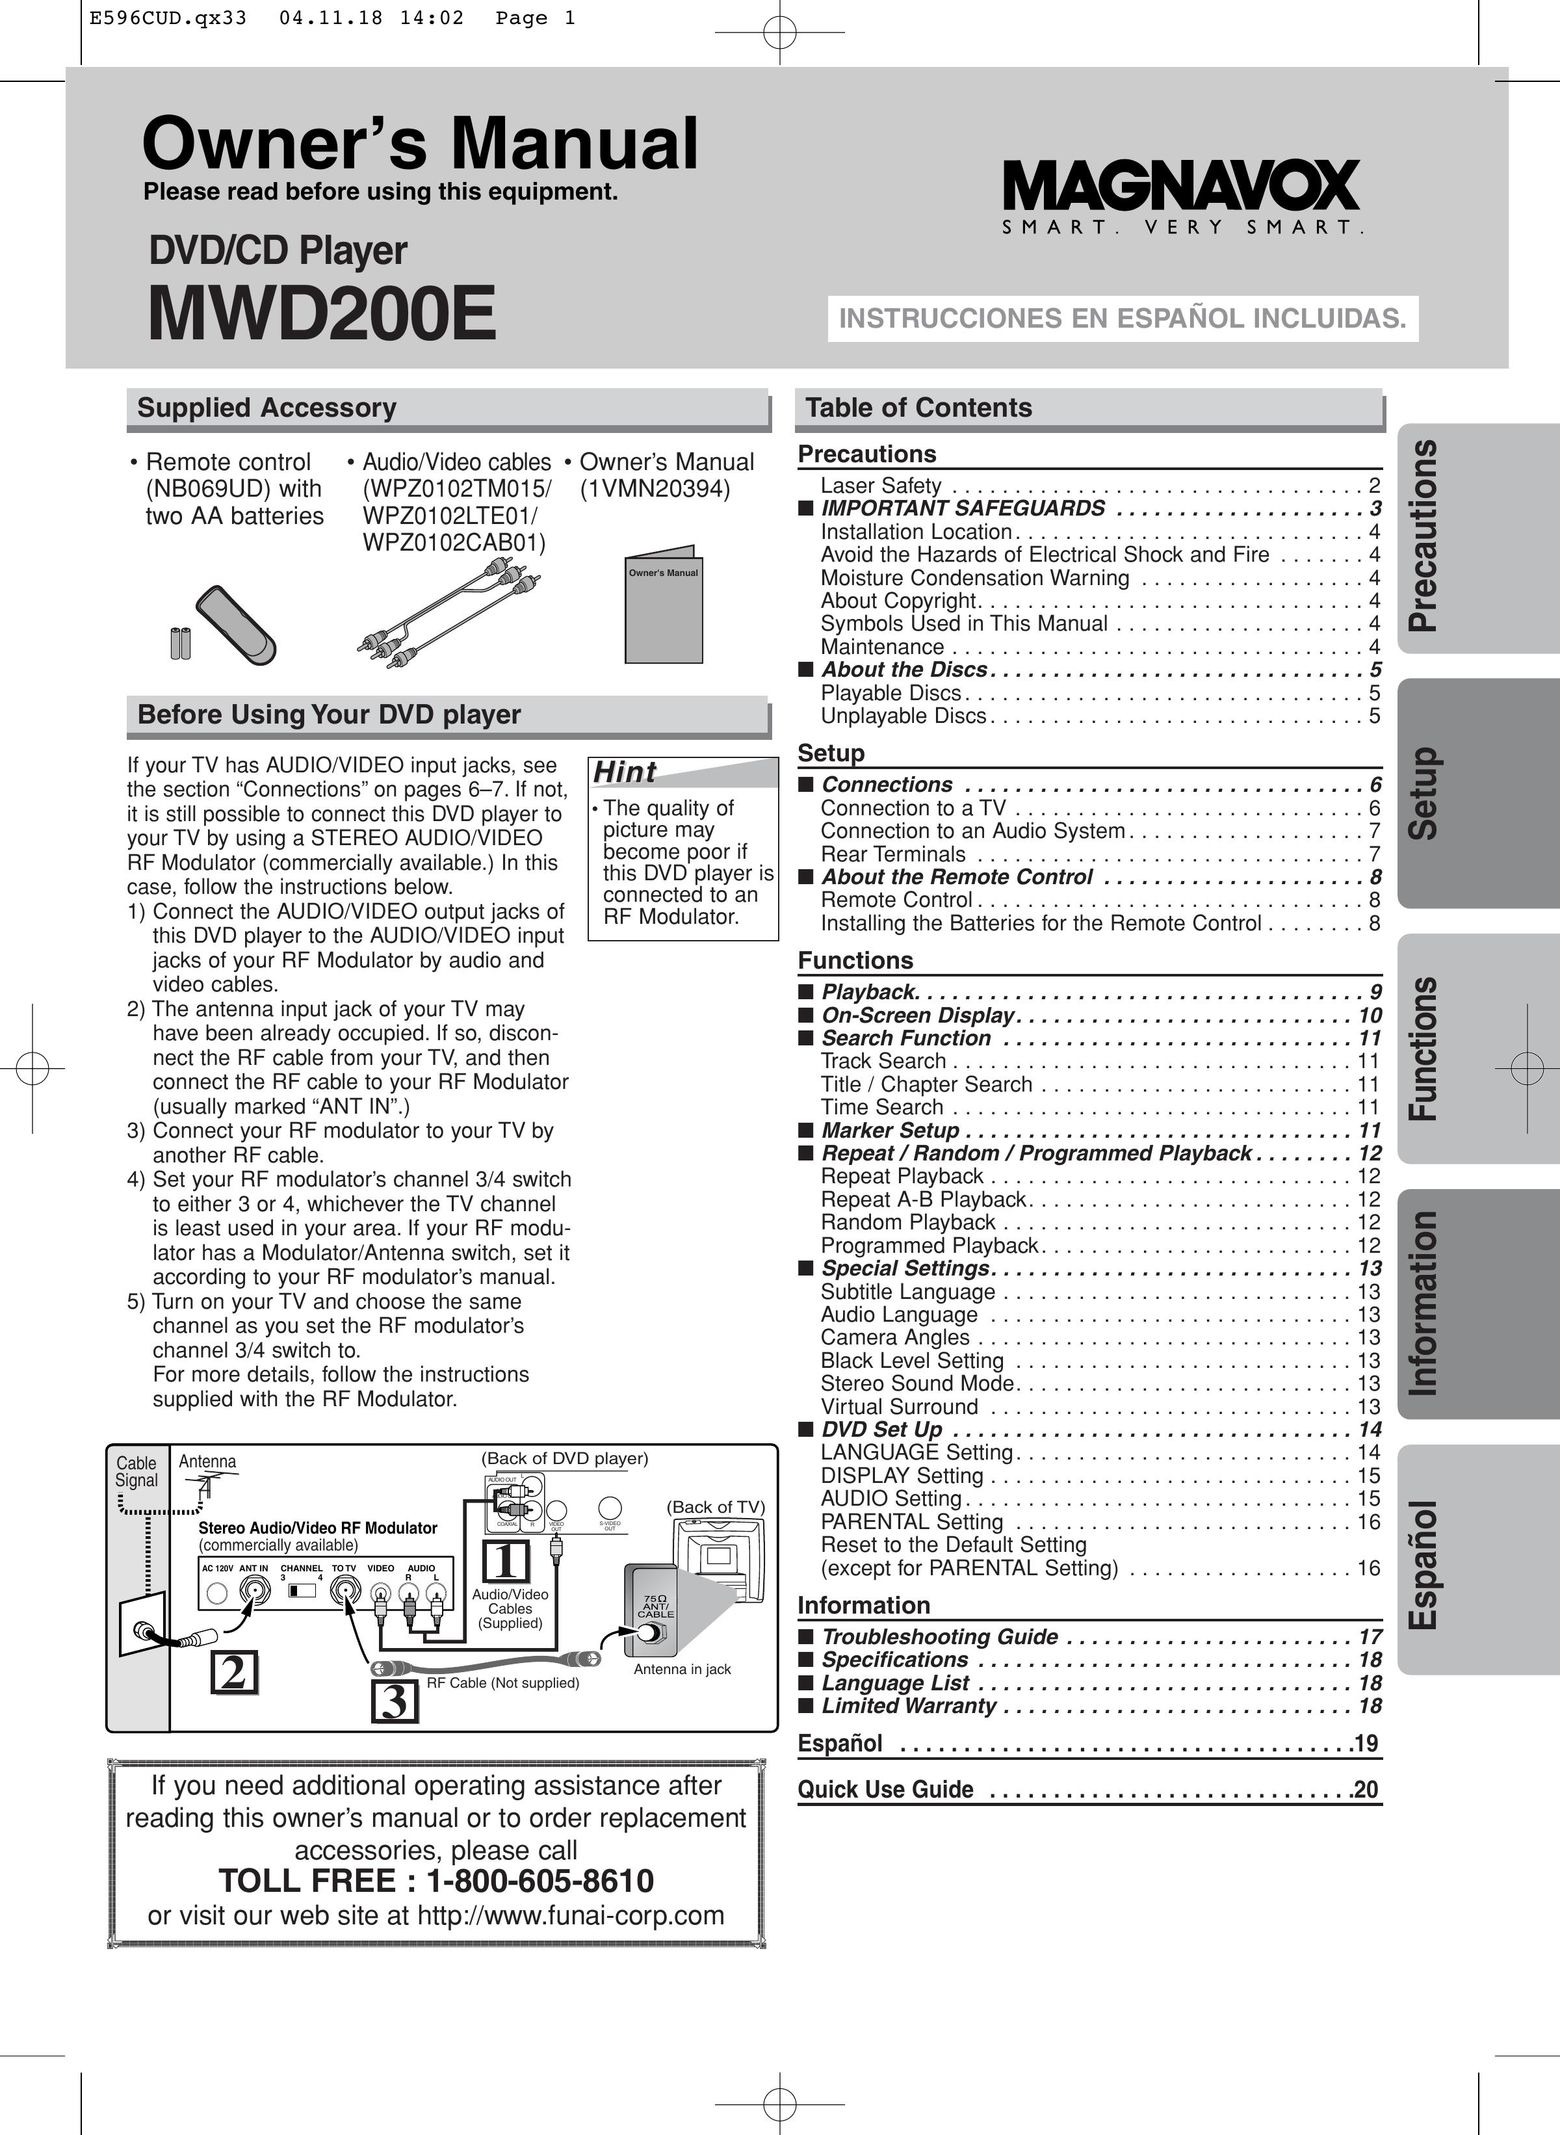 FUNAI MWD200E DVD Player User Manual